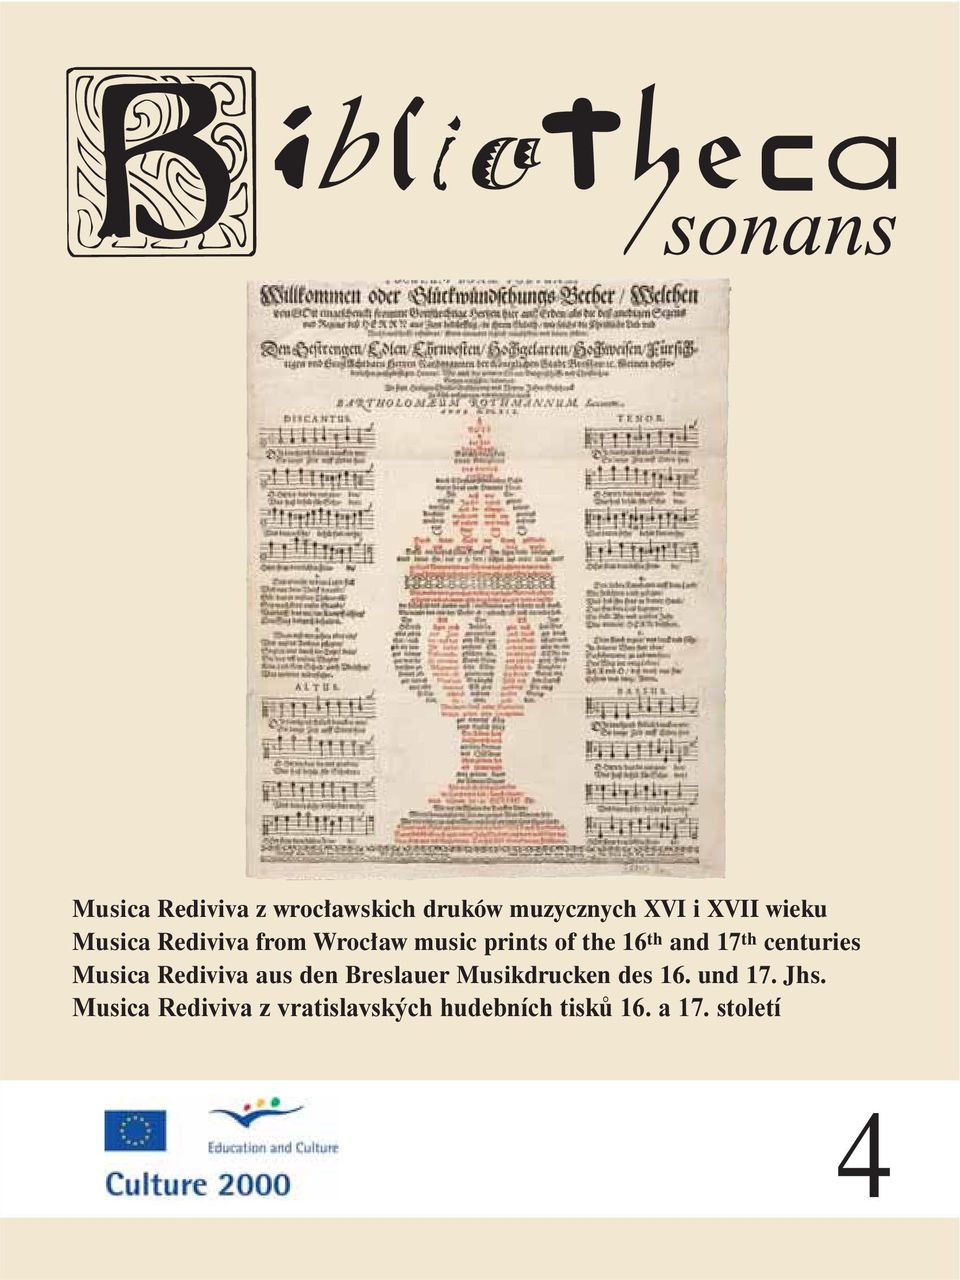 centuries Musica Rediviva aus den Breslauer Musikdrucken des 16.